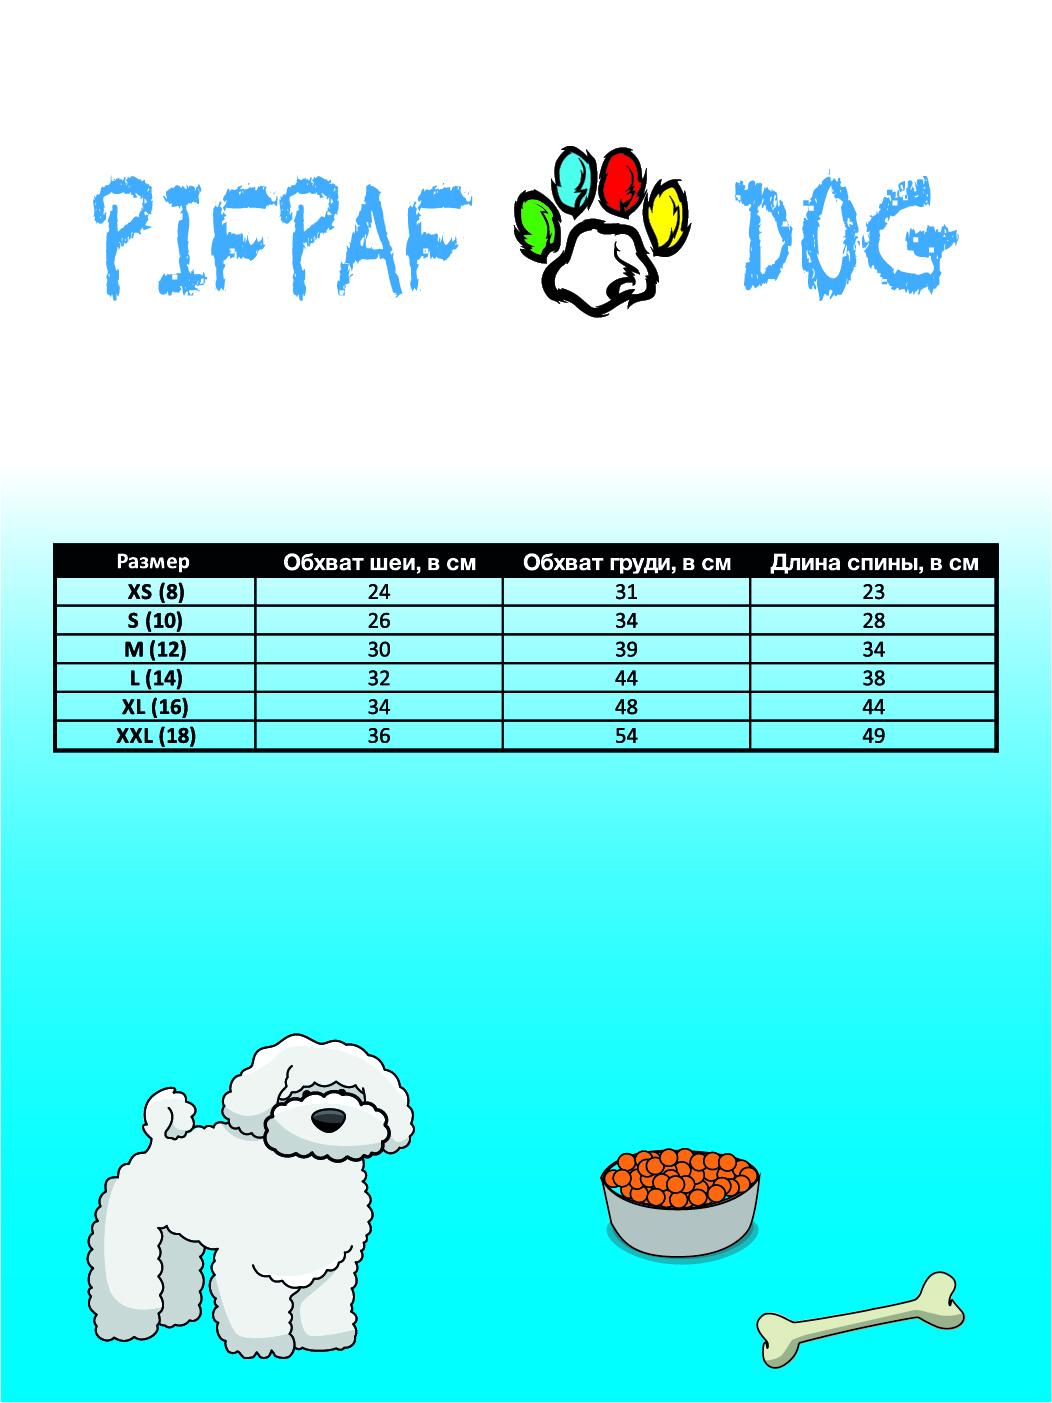 Толстовка для собак PIFPAF DOG - фото 8